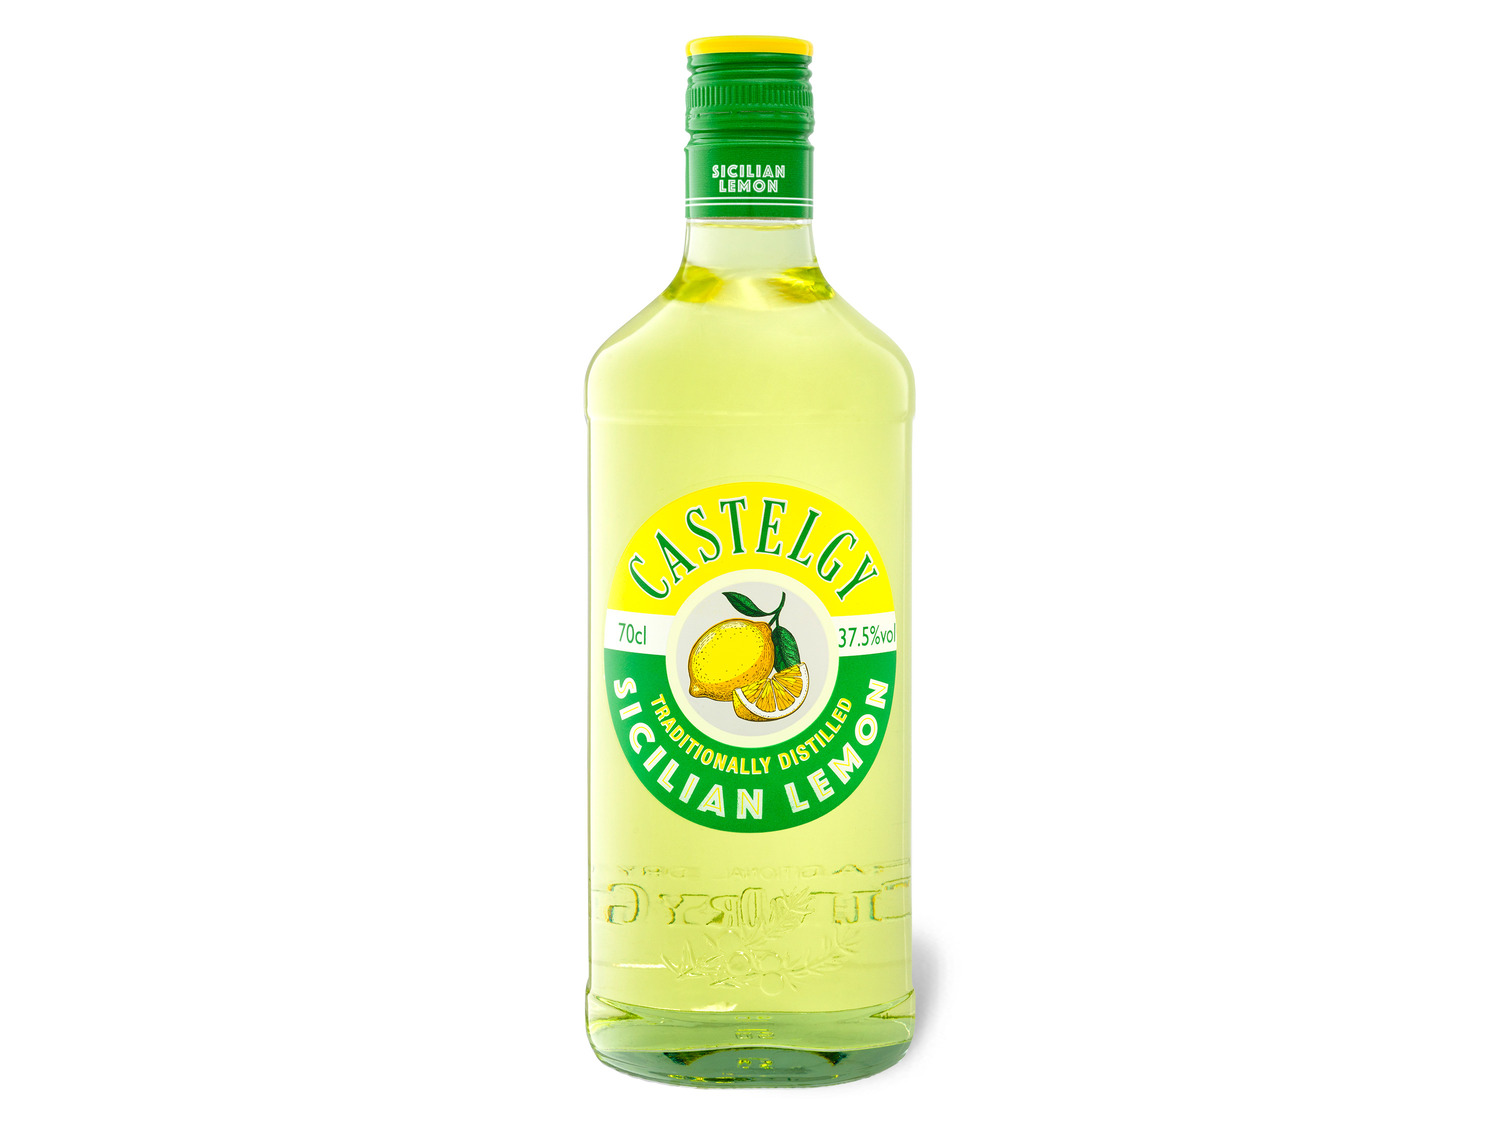 LIDL Sicilian Lemon | 37,5% Vol CASTELGY Gin